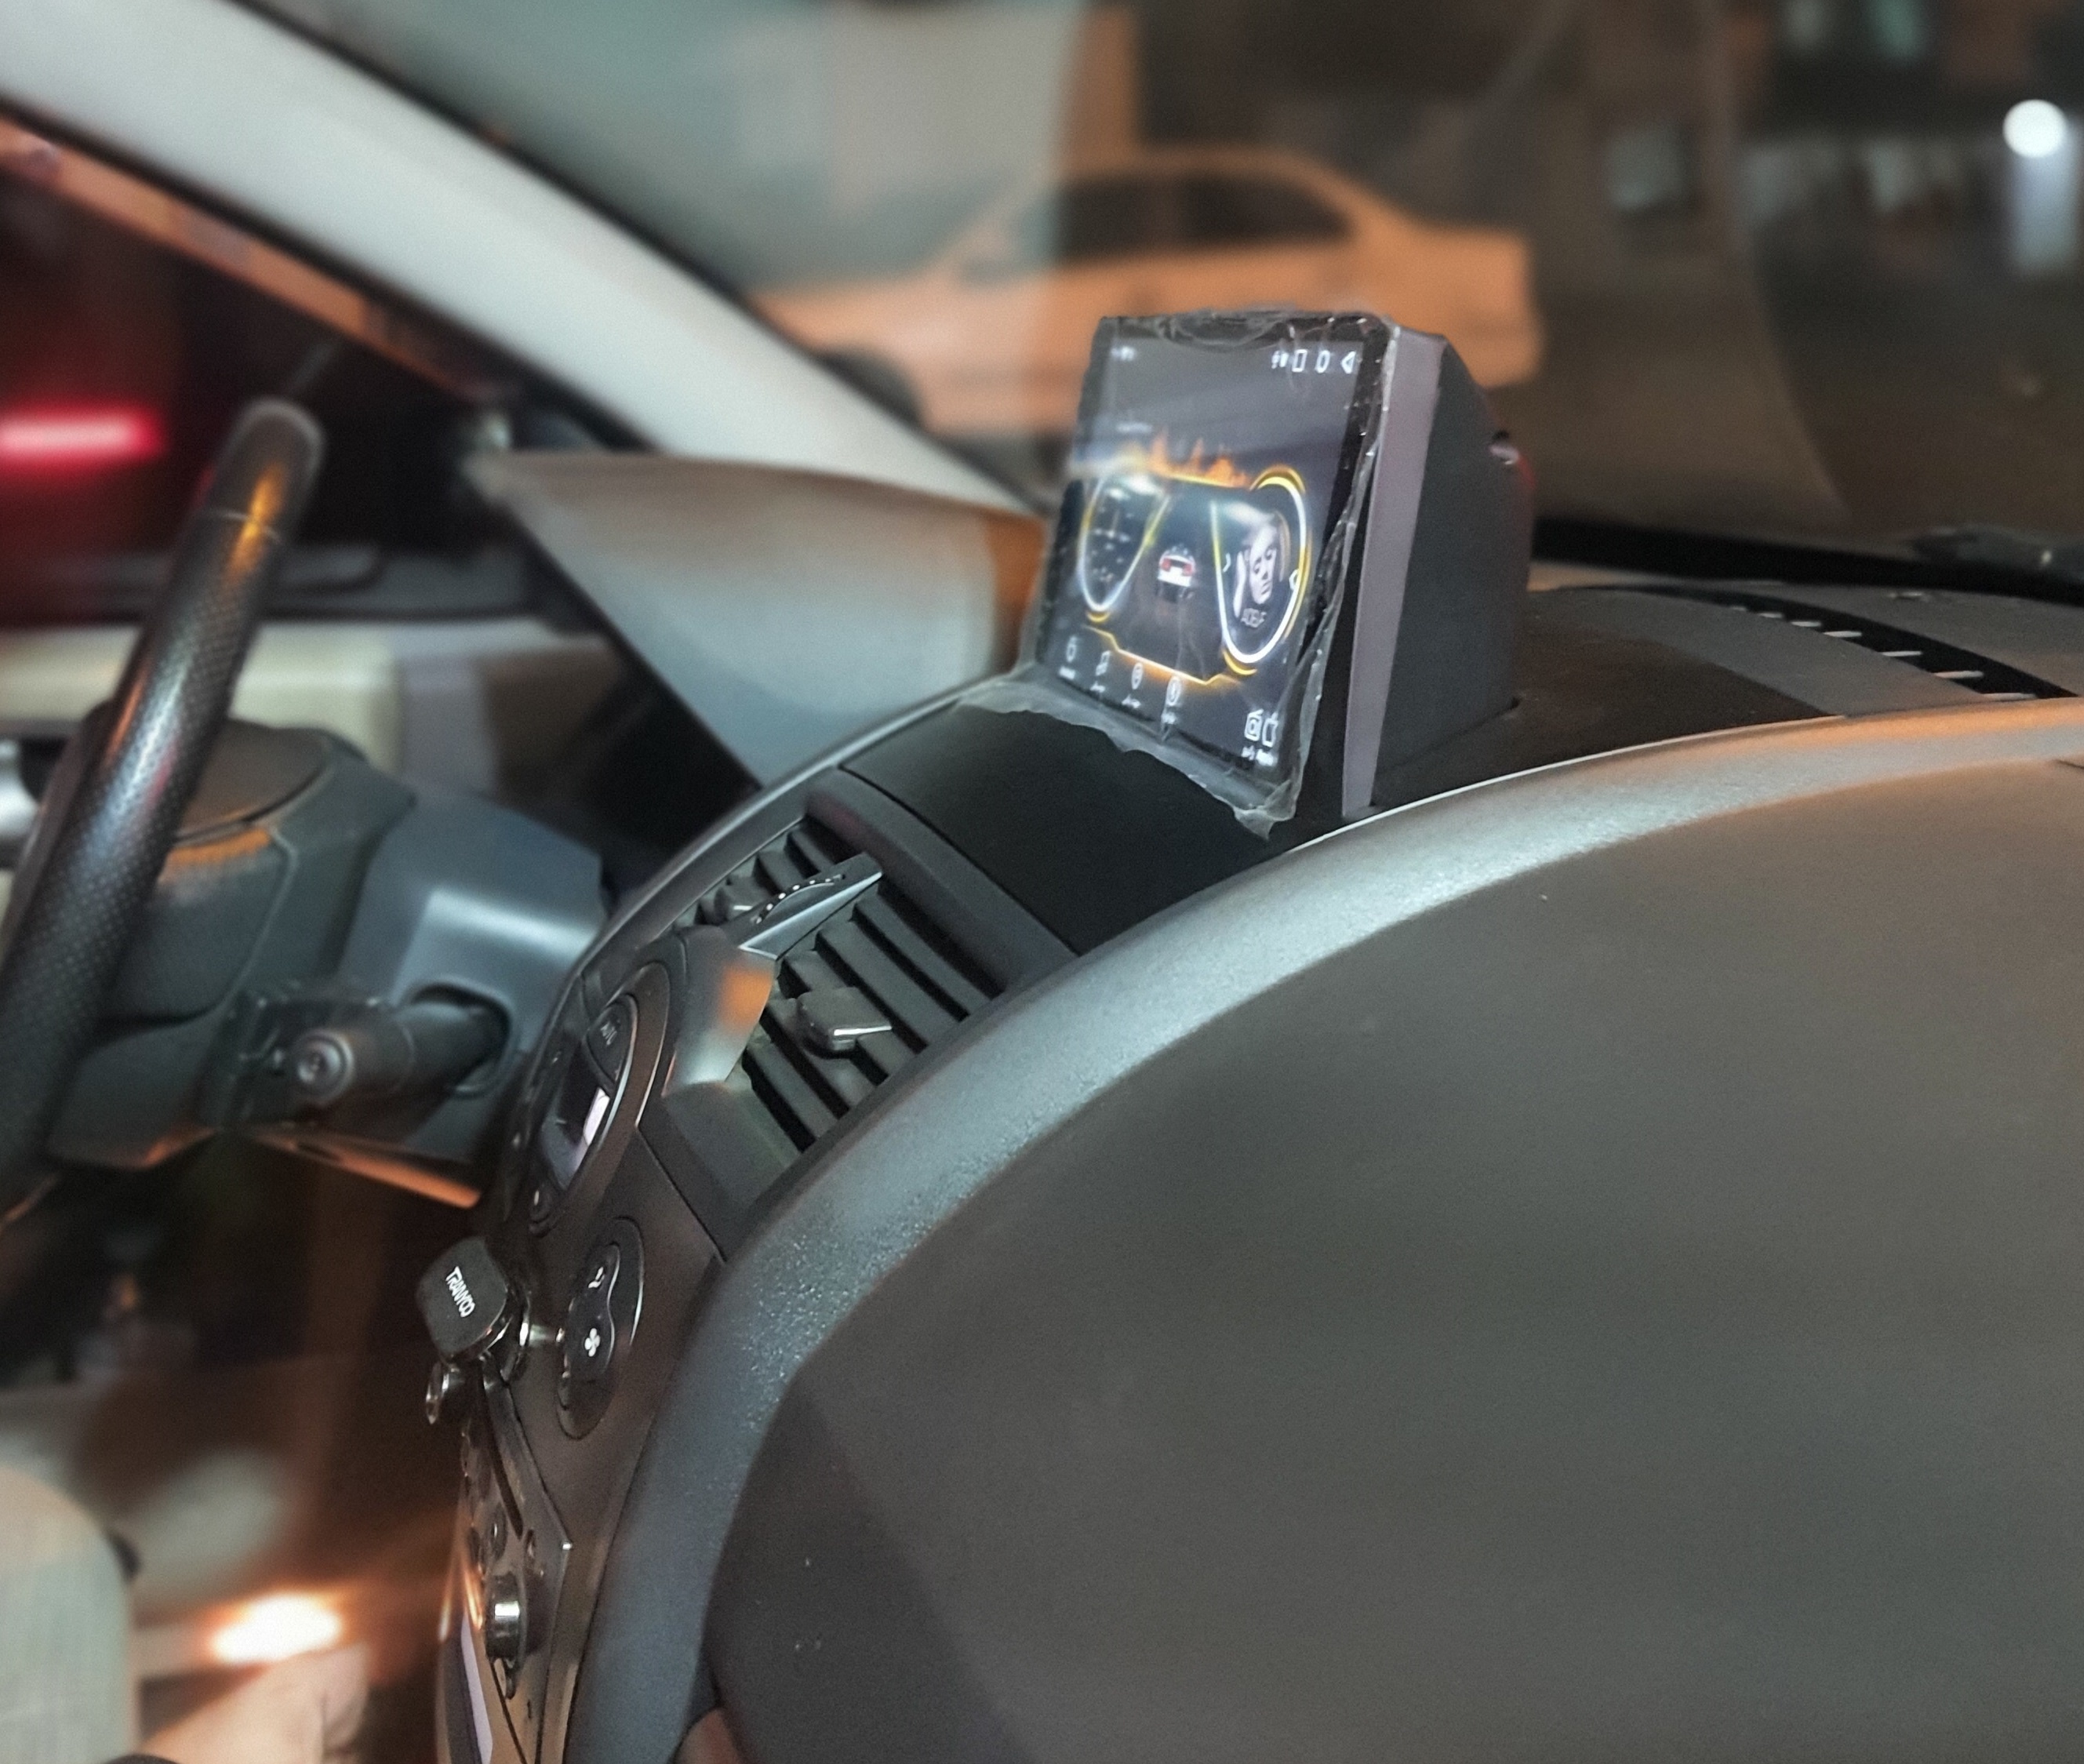 ضبط مانیتور خودرو مگان  اندروید 13 با کنباس سوکت فابریکی